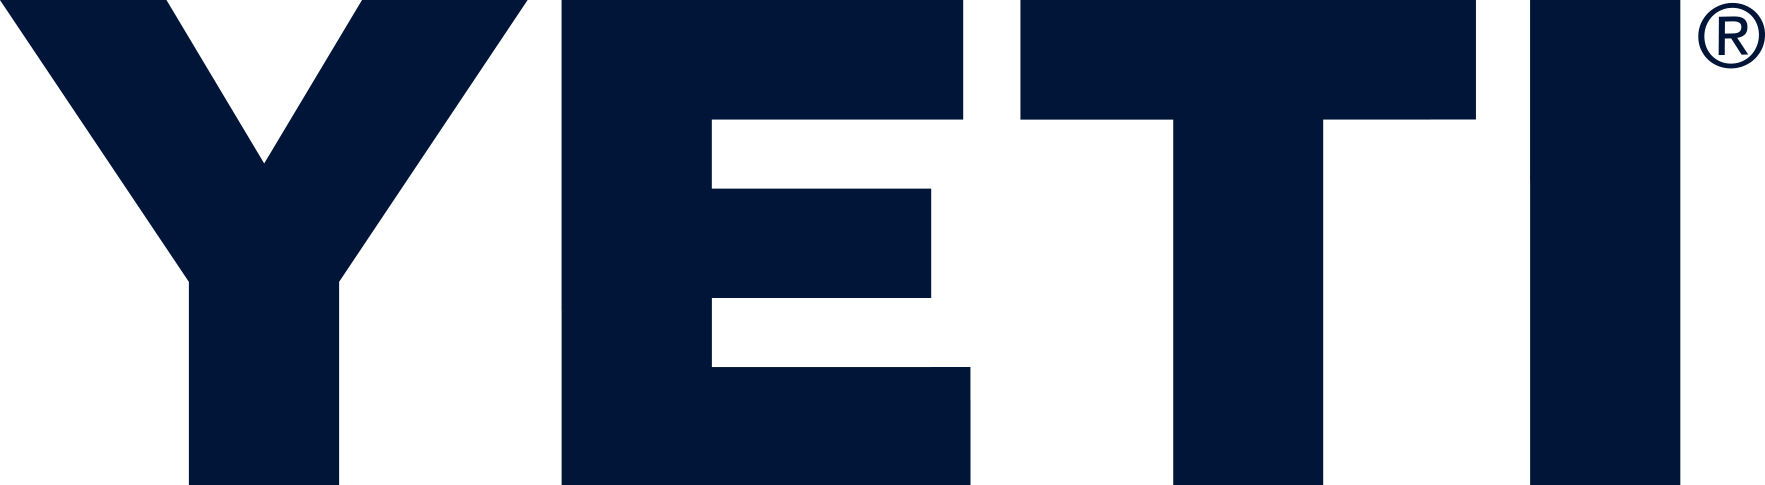 Yeti Logo PNG